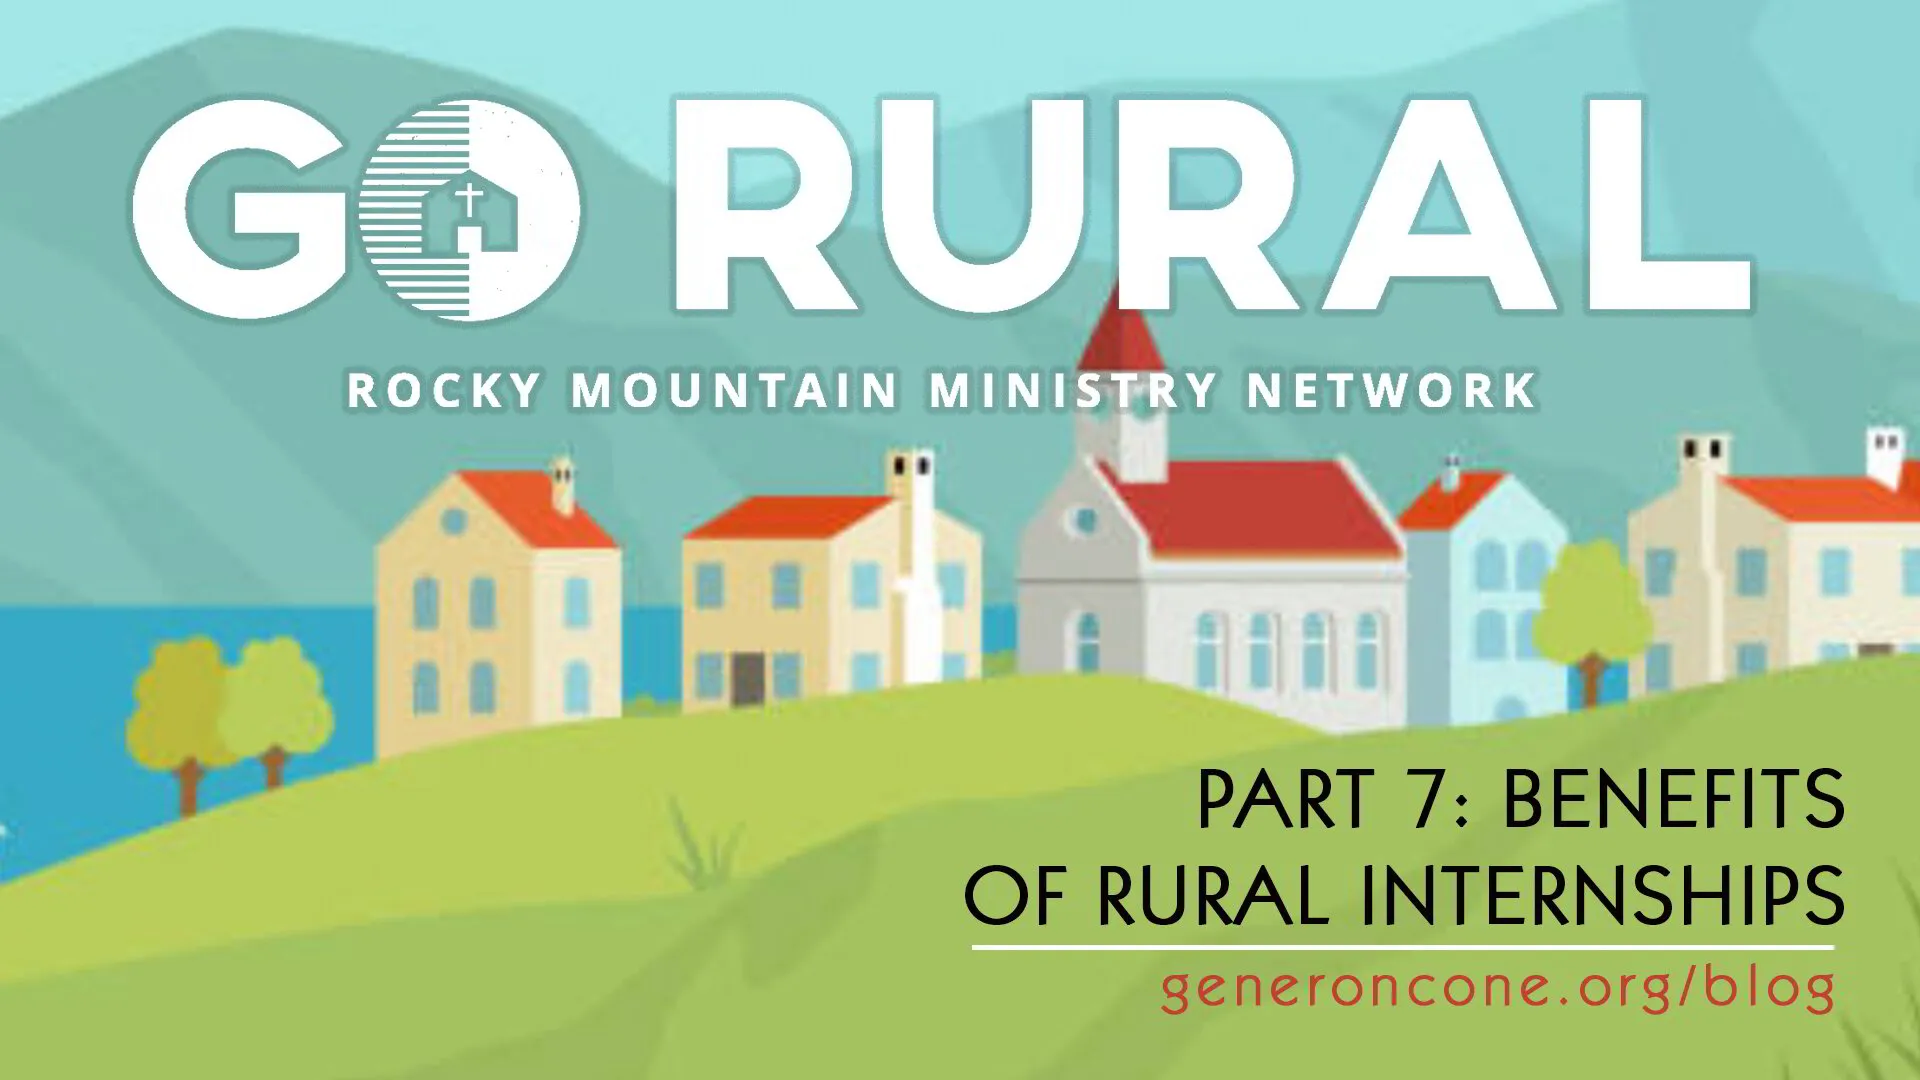 Go Rural, Part 7: Benefits of Rural Internships